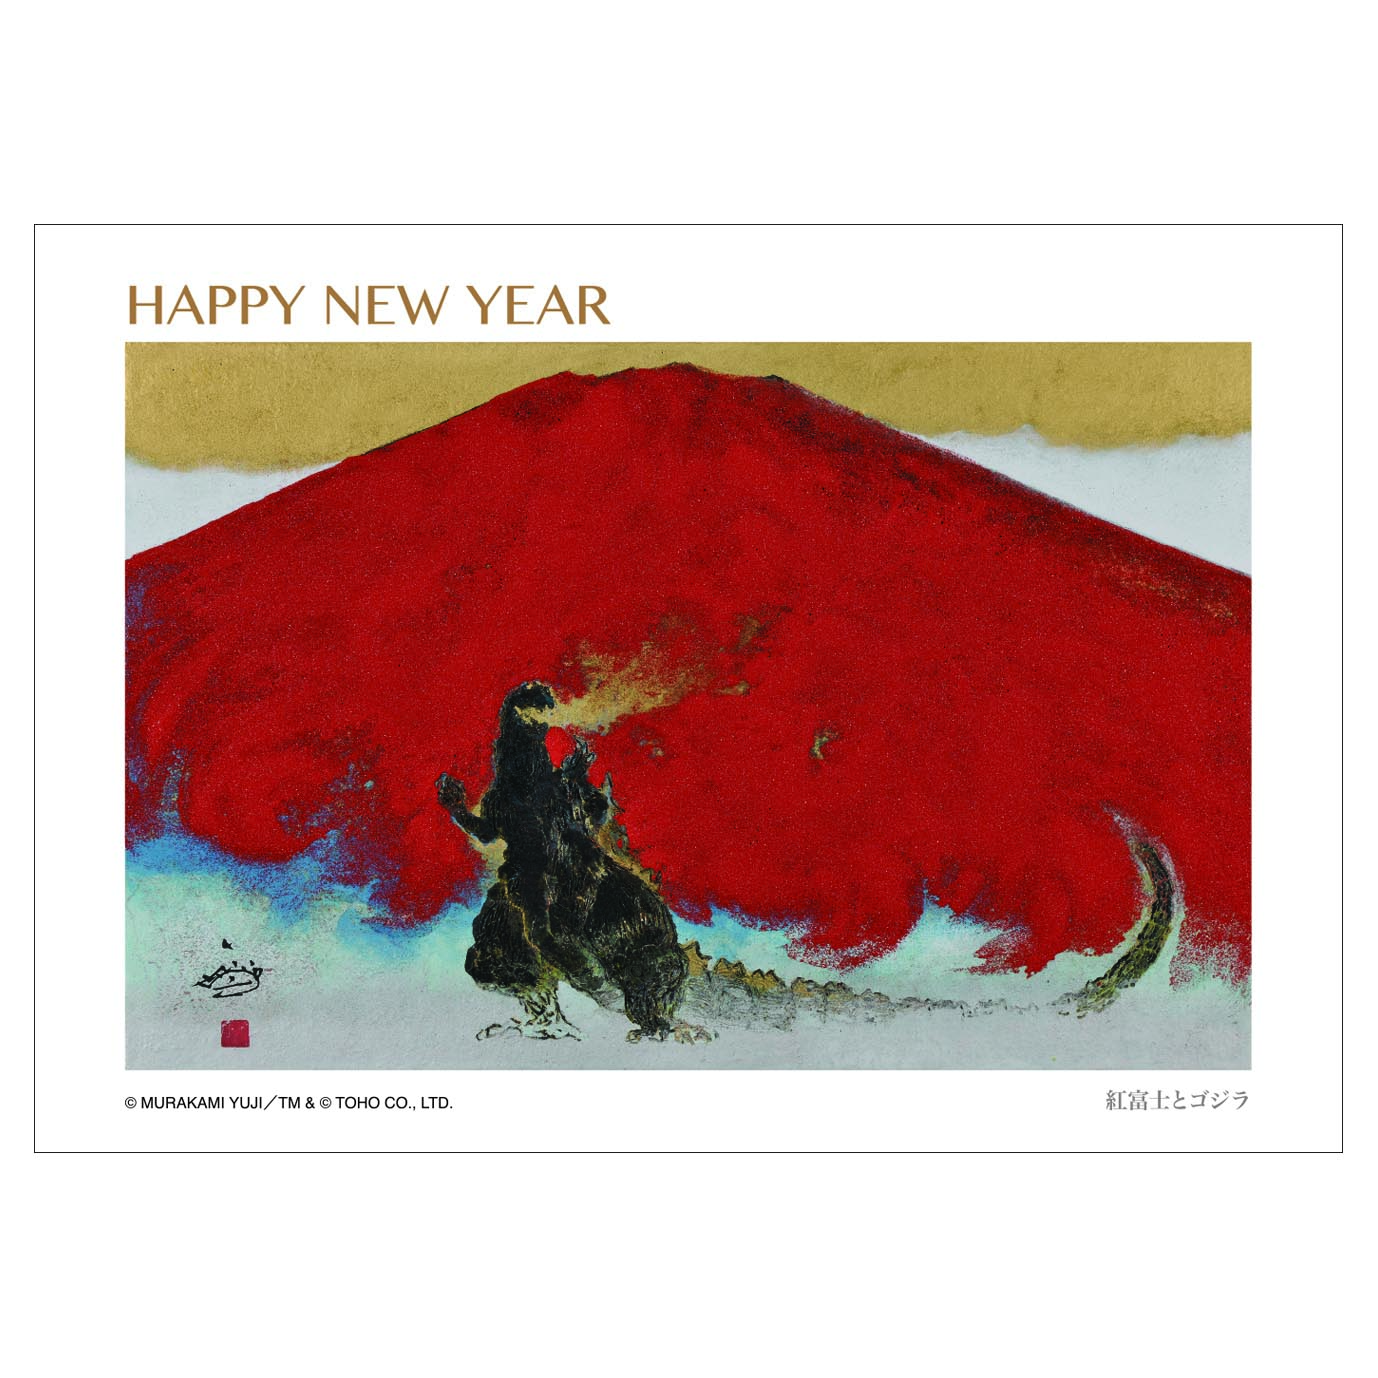 グリーティングカード25　HAPPY NEW YEAR（紅富士とゴジラ）